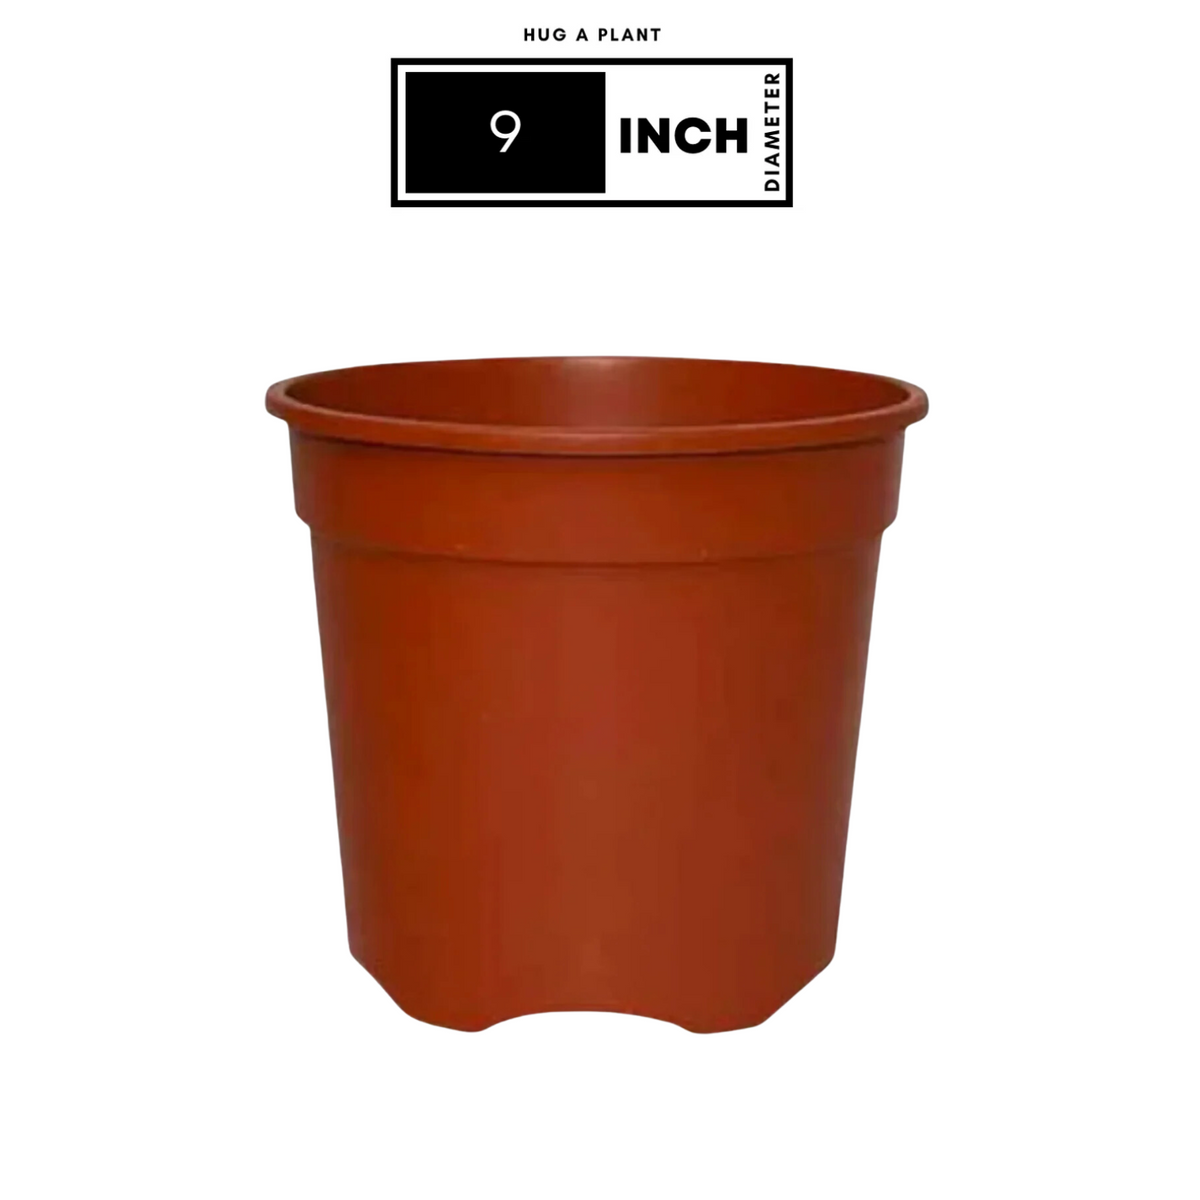 9 Inch Gro Pro Terracotta Plastic Pot for Home & Garden